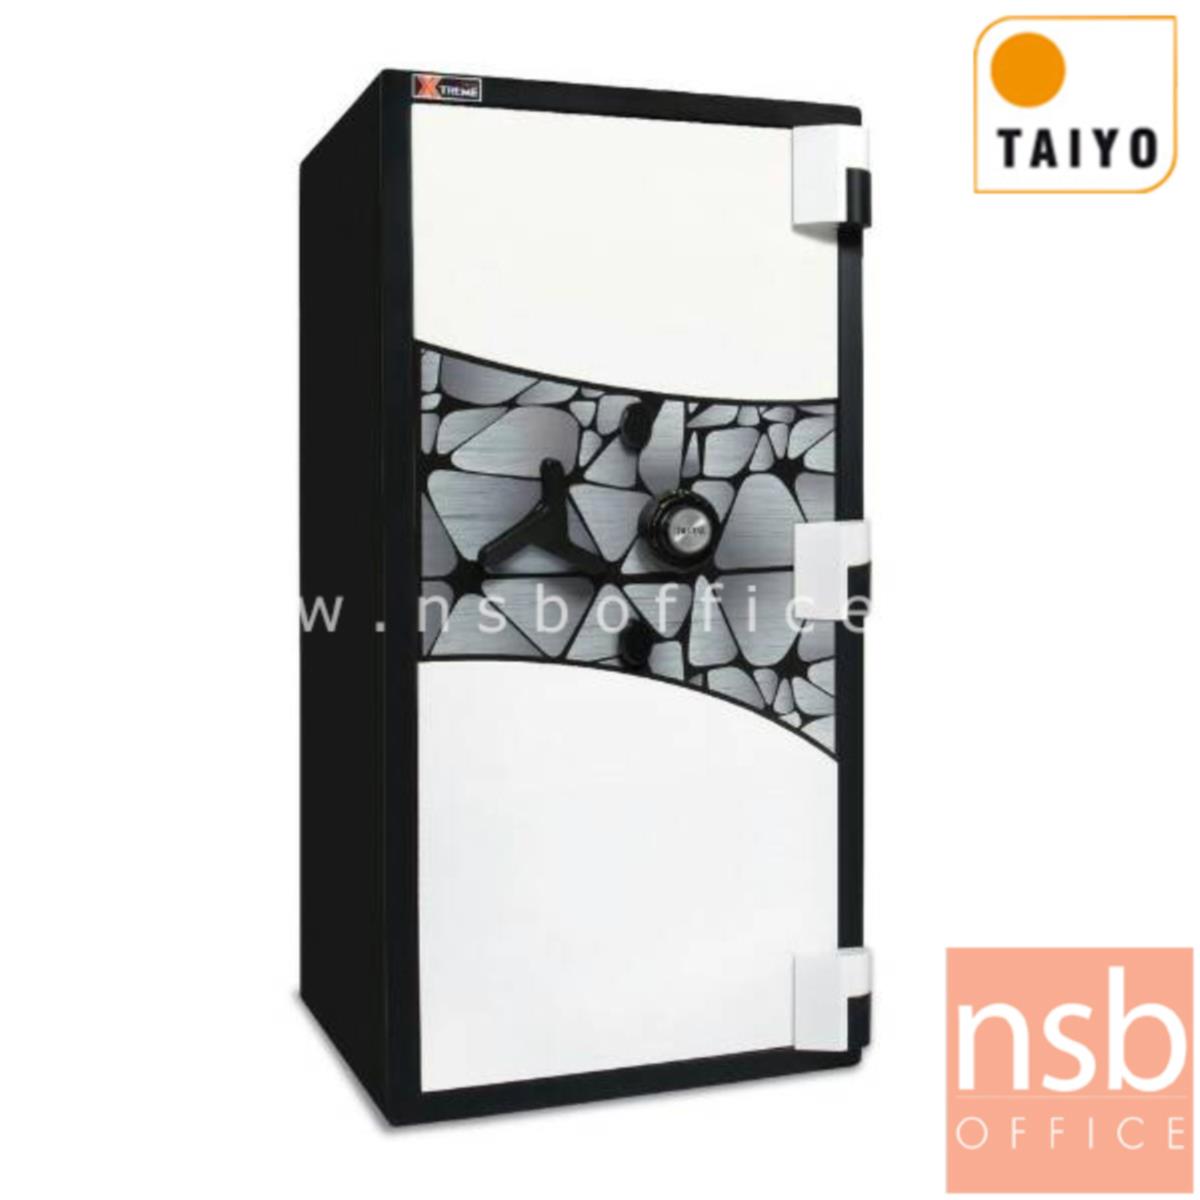 ตู้เซฟ Taiyo Xtreme รุ่นพิเศษ BS 120 K2C น้ำหนัก 600 กก. 2 กุญแจ 1 รหัส   